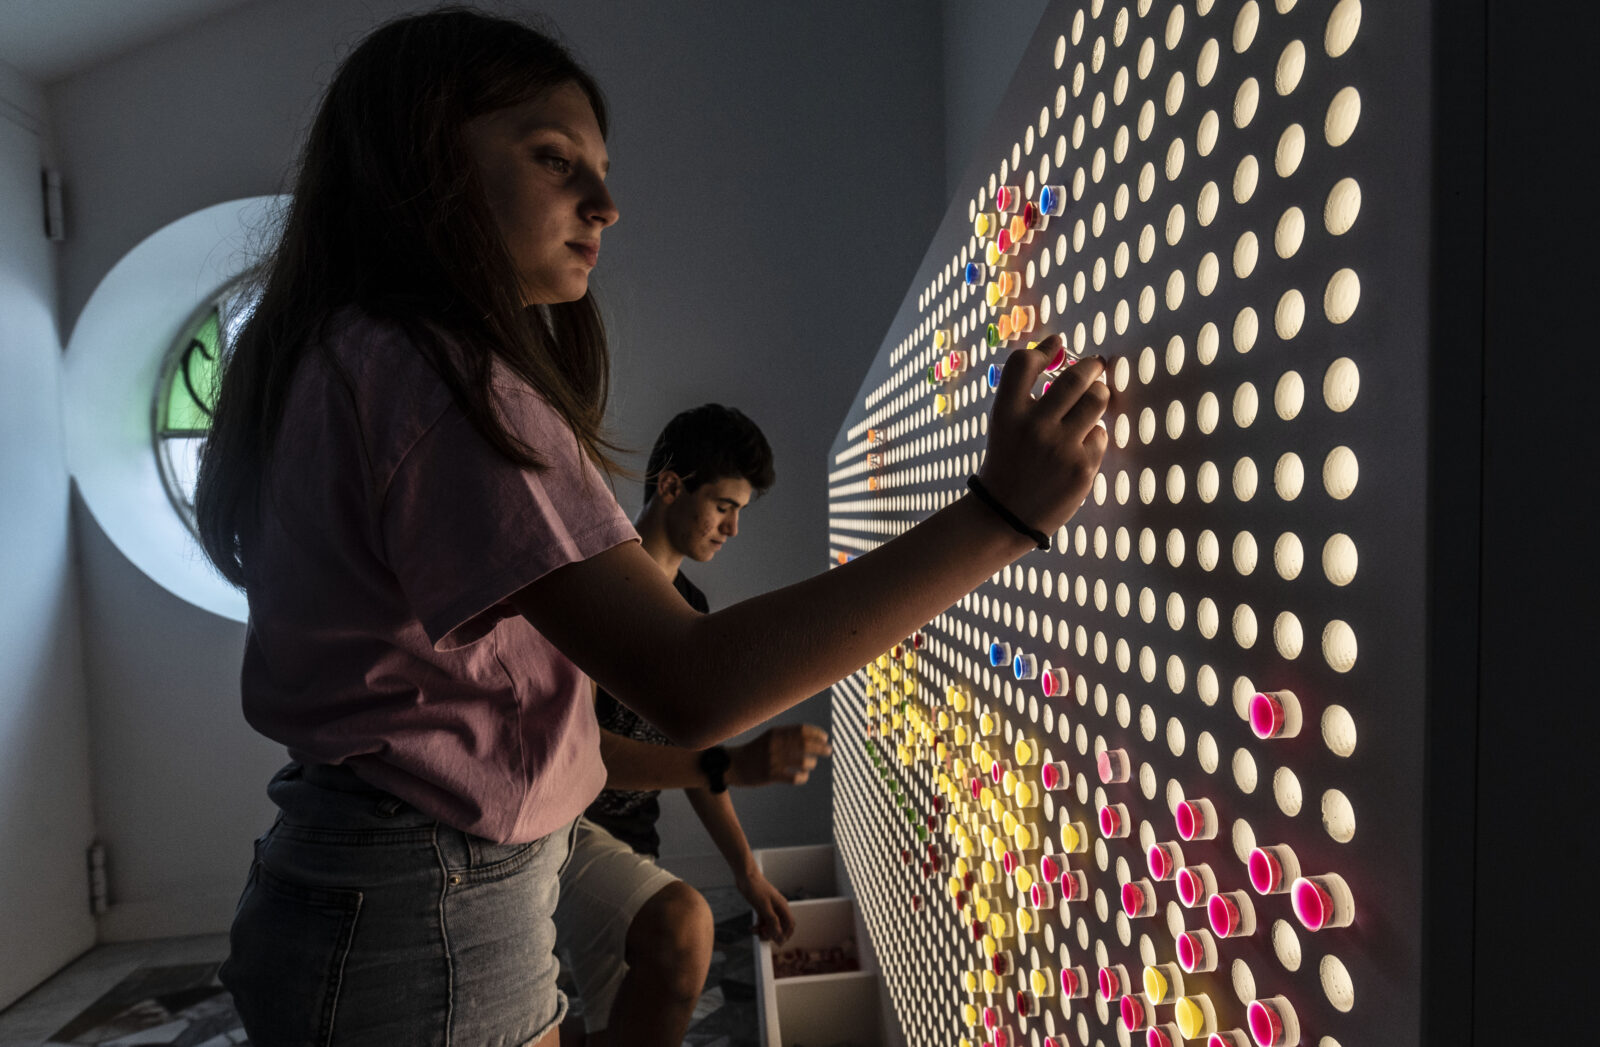 bambina che gioca con delle provette colorate inserendole in una parete forata in una stanza del mu-ch, museo della chimica, il cui allestimento è stato realizzato da ett